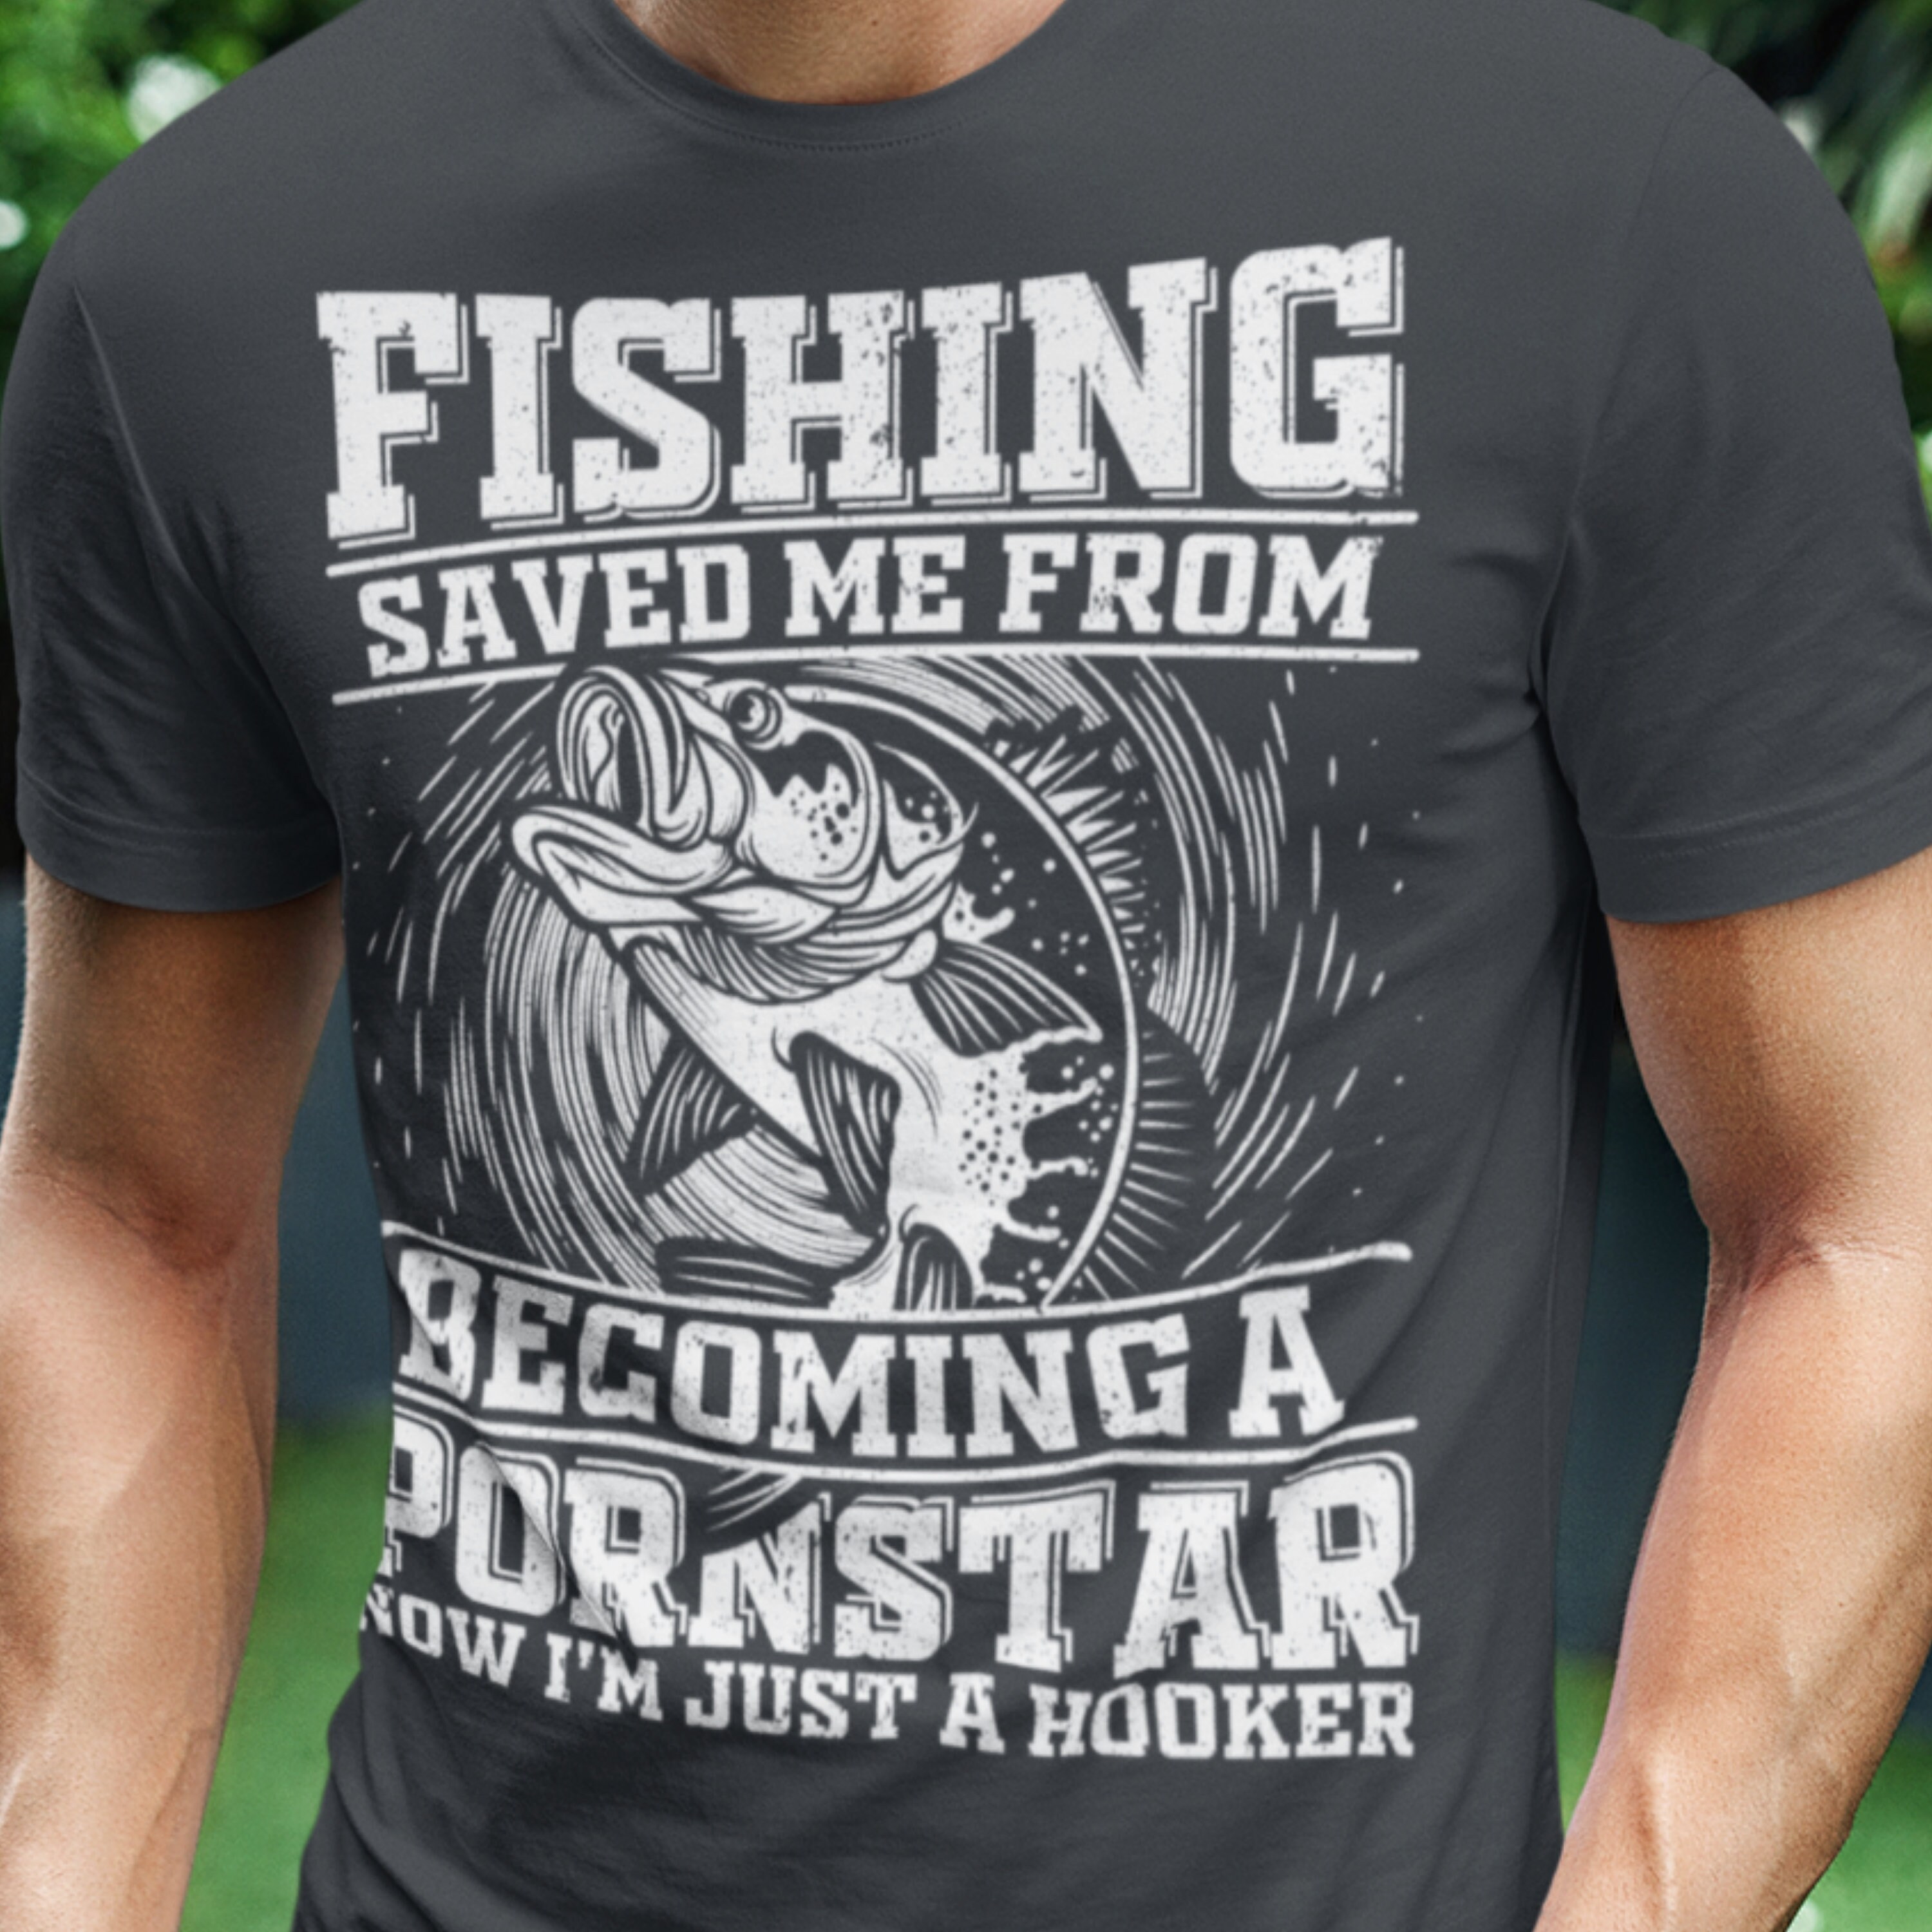 Fishing Shirt for Dad Fathers Day Gift, Men Fishing Tshirt for Dad, Fisherman T shirt Gift for Men, Funny Fishing tee, Bass Fishing Shirt